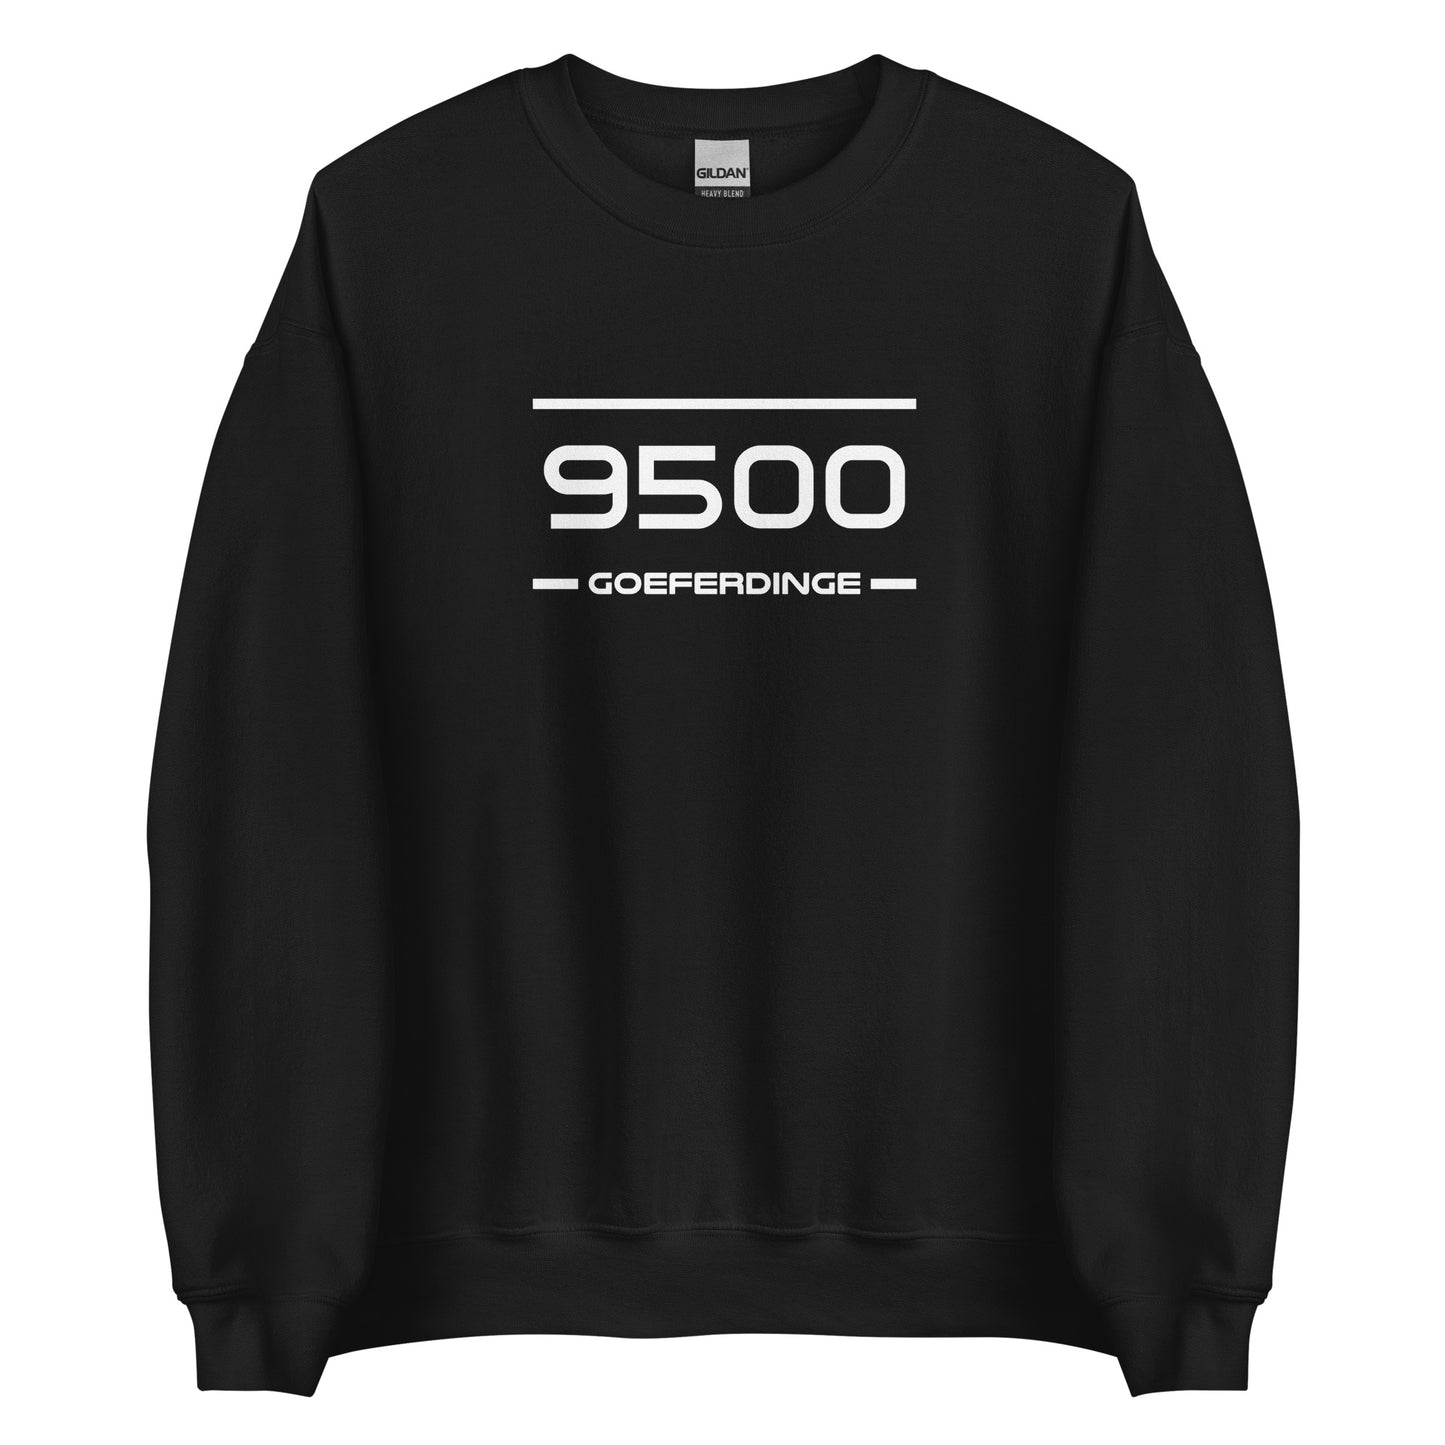 Sweater - 9500 - Goeferdinge (M/V)